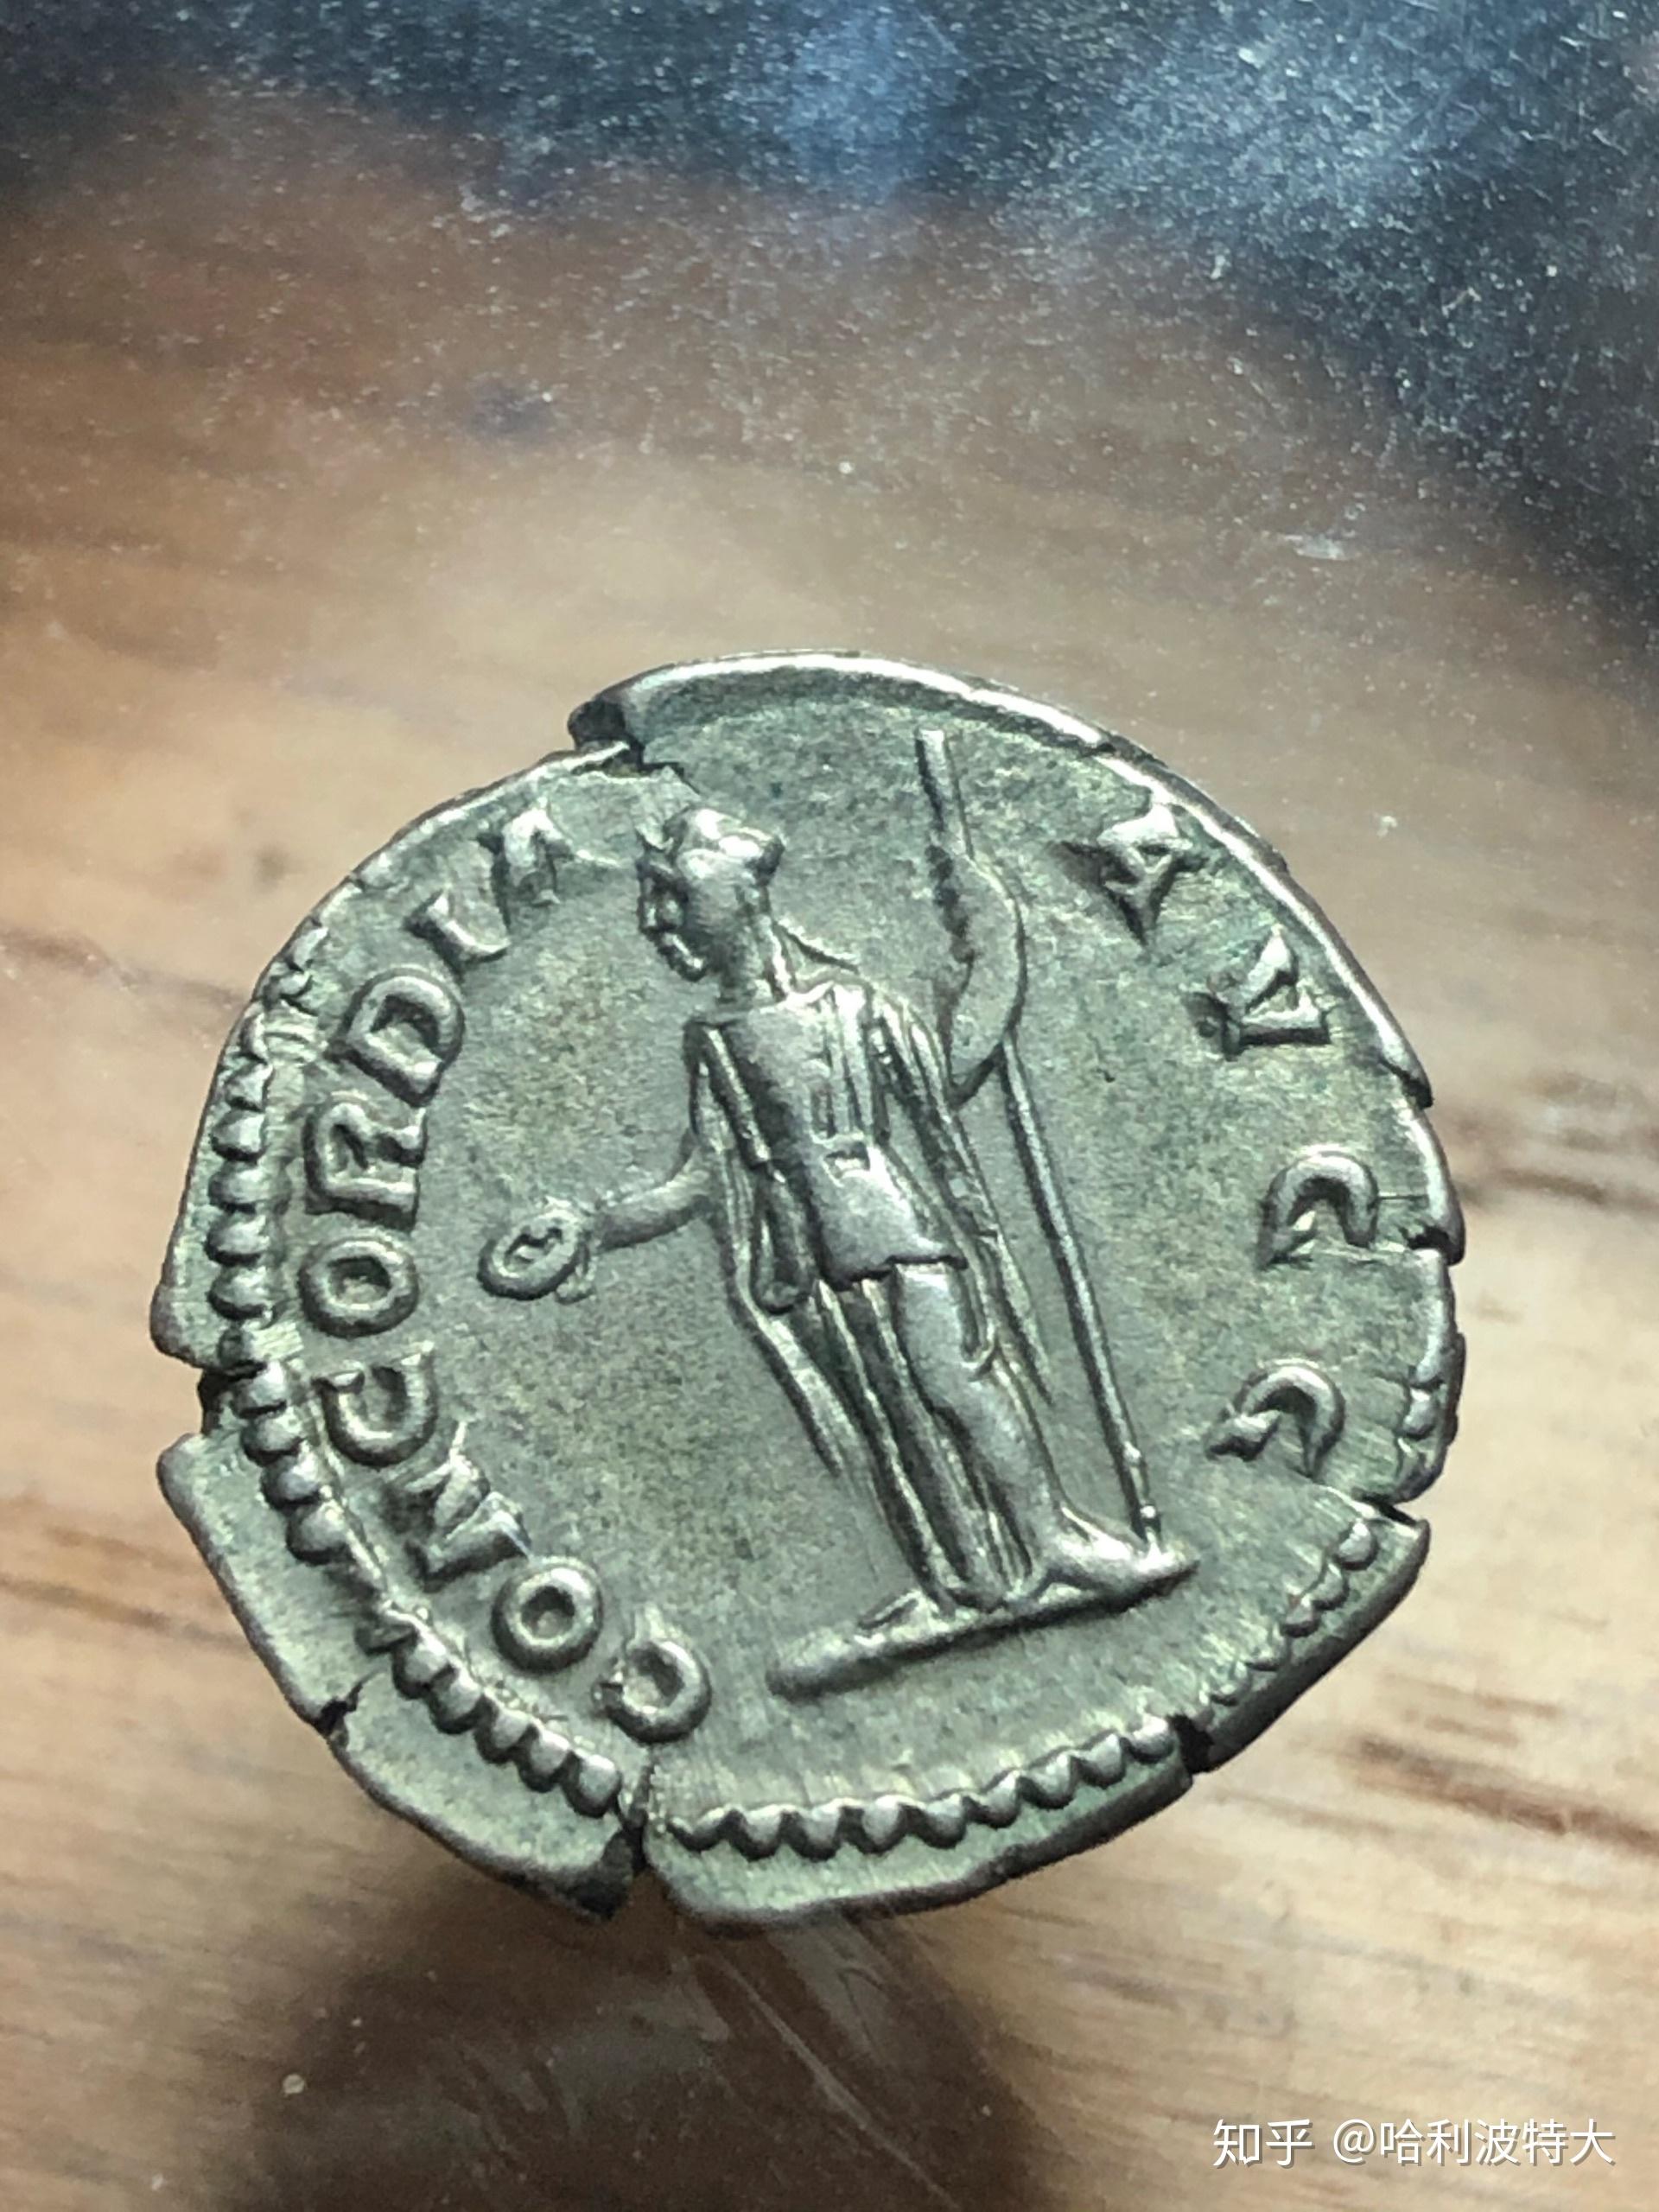 一窥古罗马钱币上的女性——普劳缇拉(plautilla)第纳尔银币